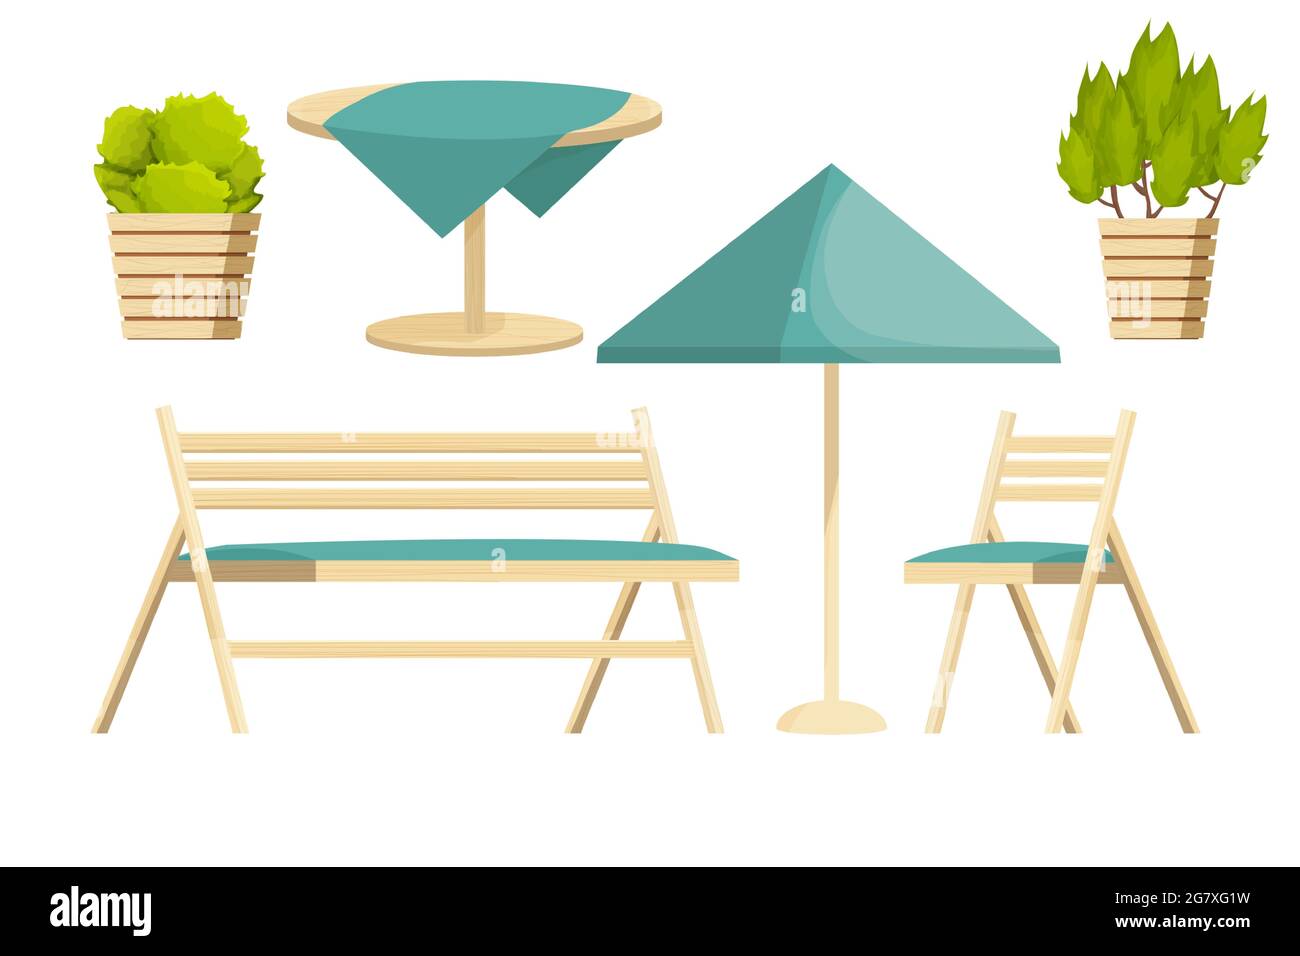 Ensemble de meubles de jardin chaise, banc en bois, table avec nappe et plantes dans le style de dessin animé isolé sur fond blanc. Collection de luxe, loisirs sur le patio. Illustration vectorielle Illustration de Vecteur